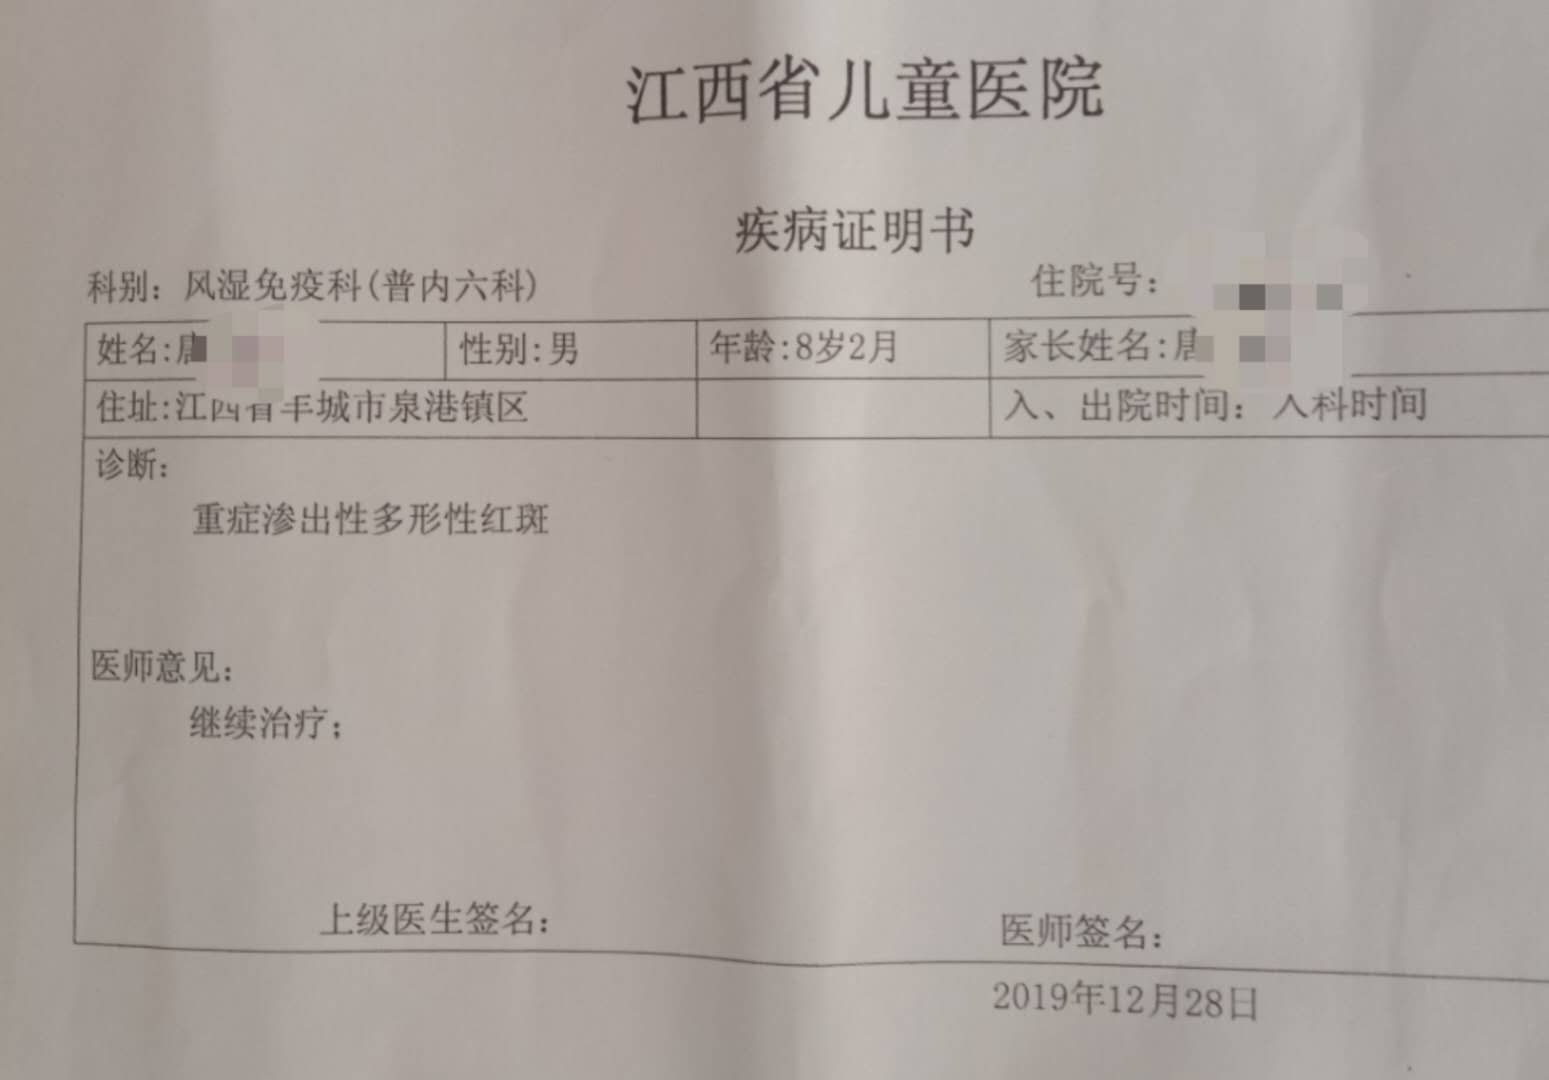 江西省儿童医院开具的诊断证明书受访者供图